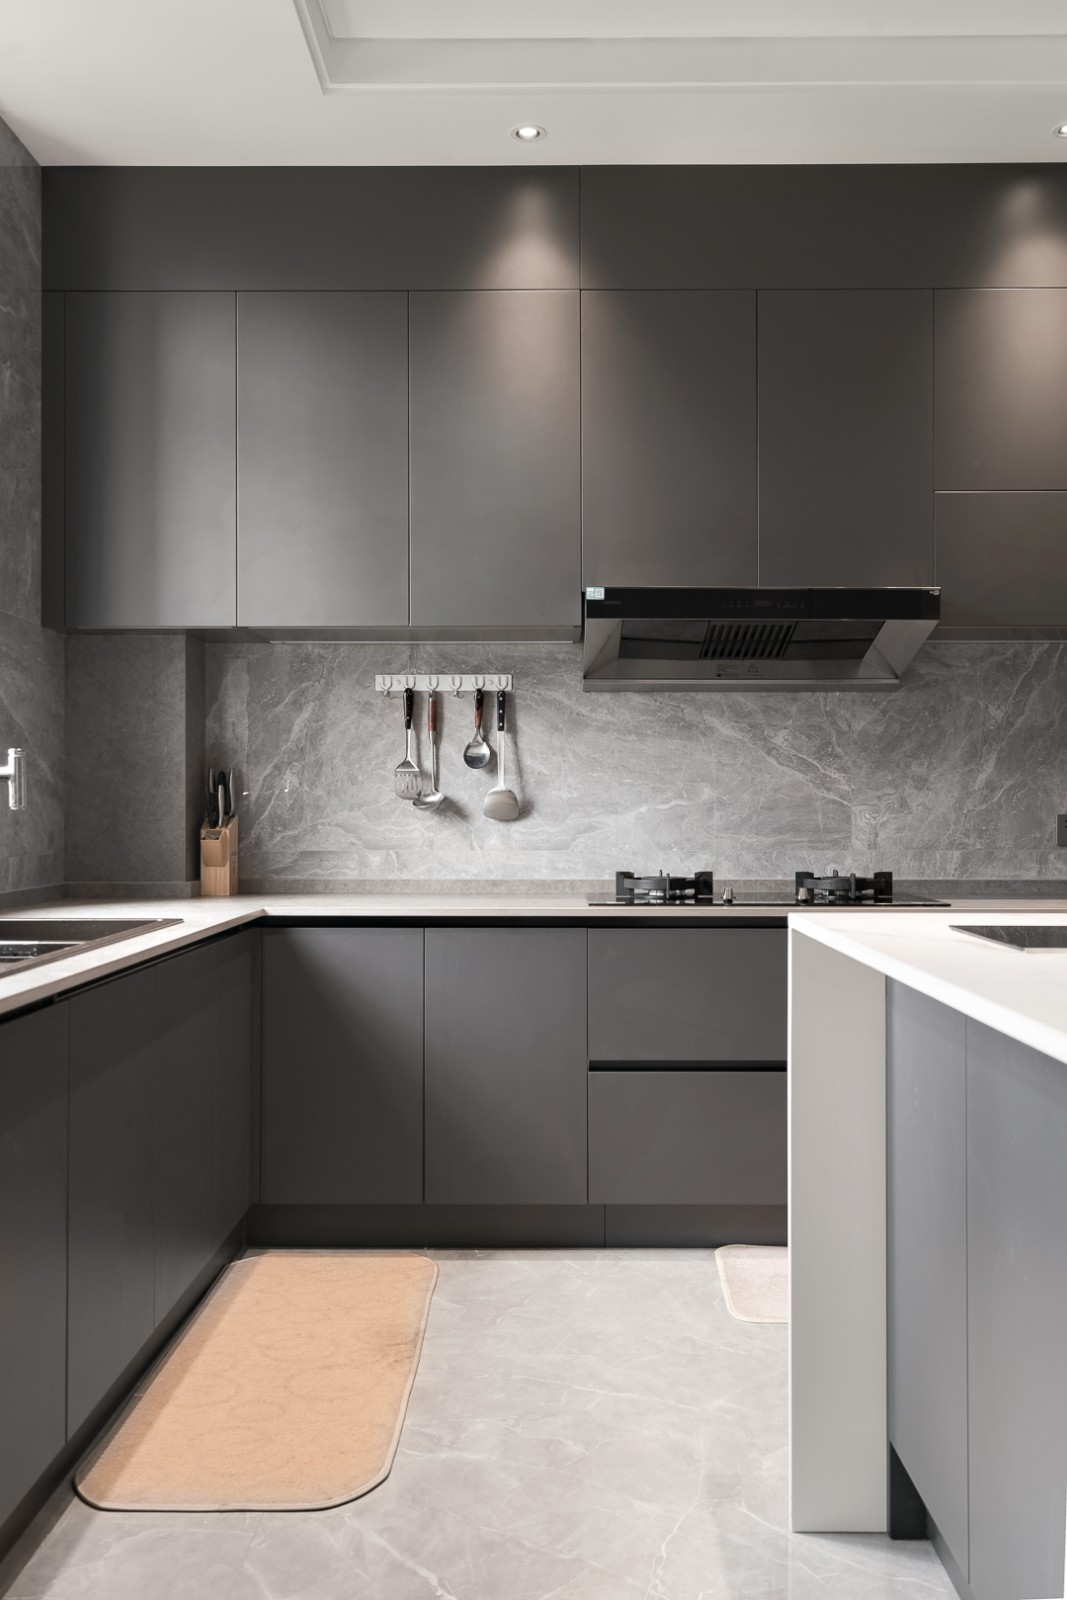 厨房开阔大气,经典的黑白灰配色,展现了现代主义下的极简美学